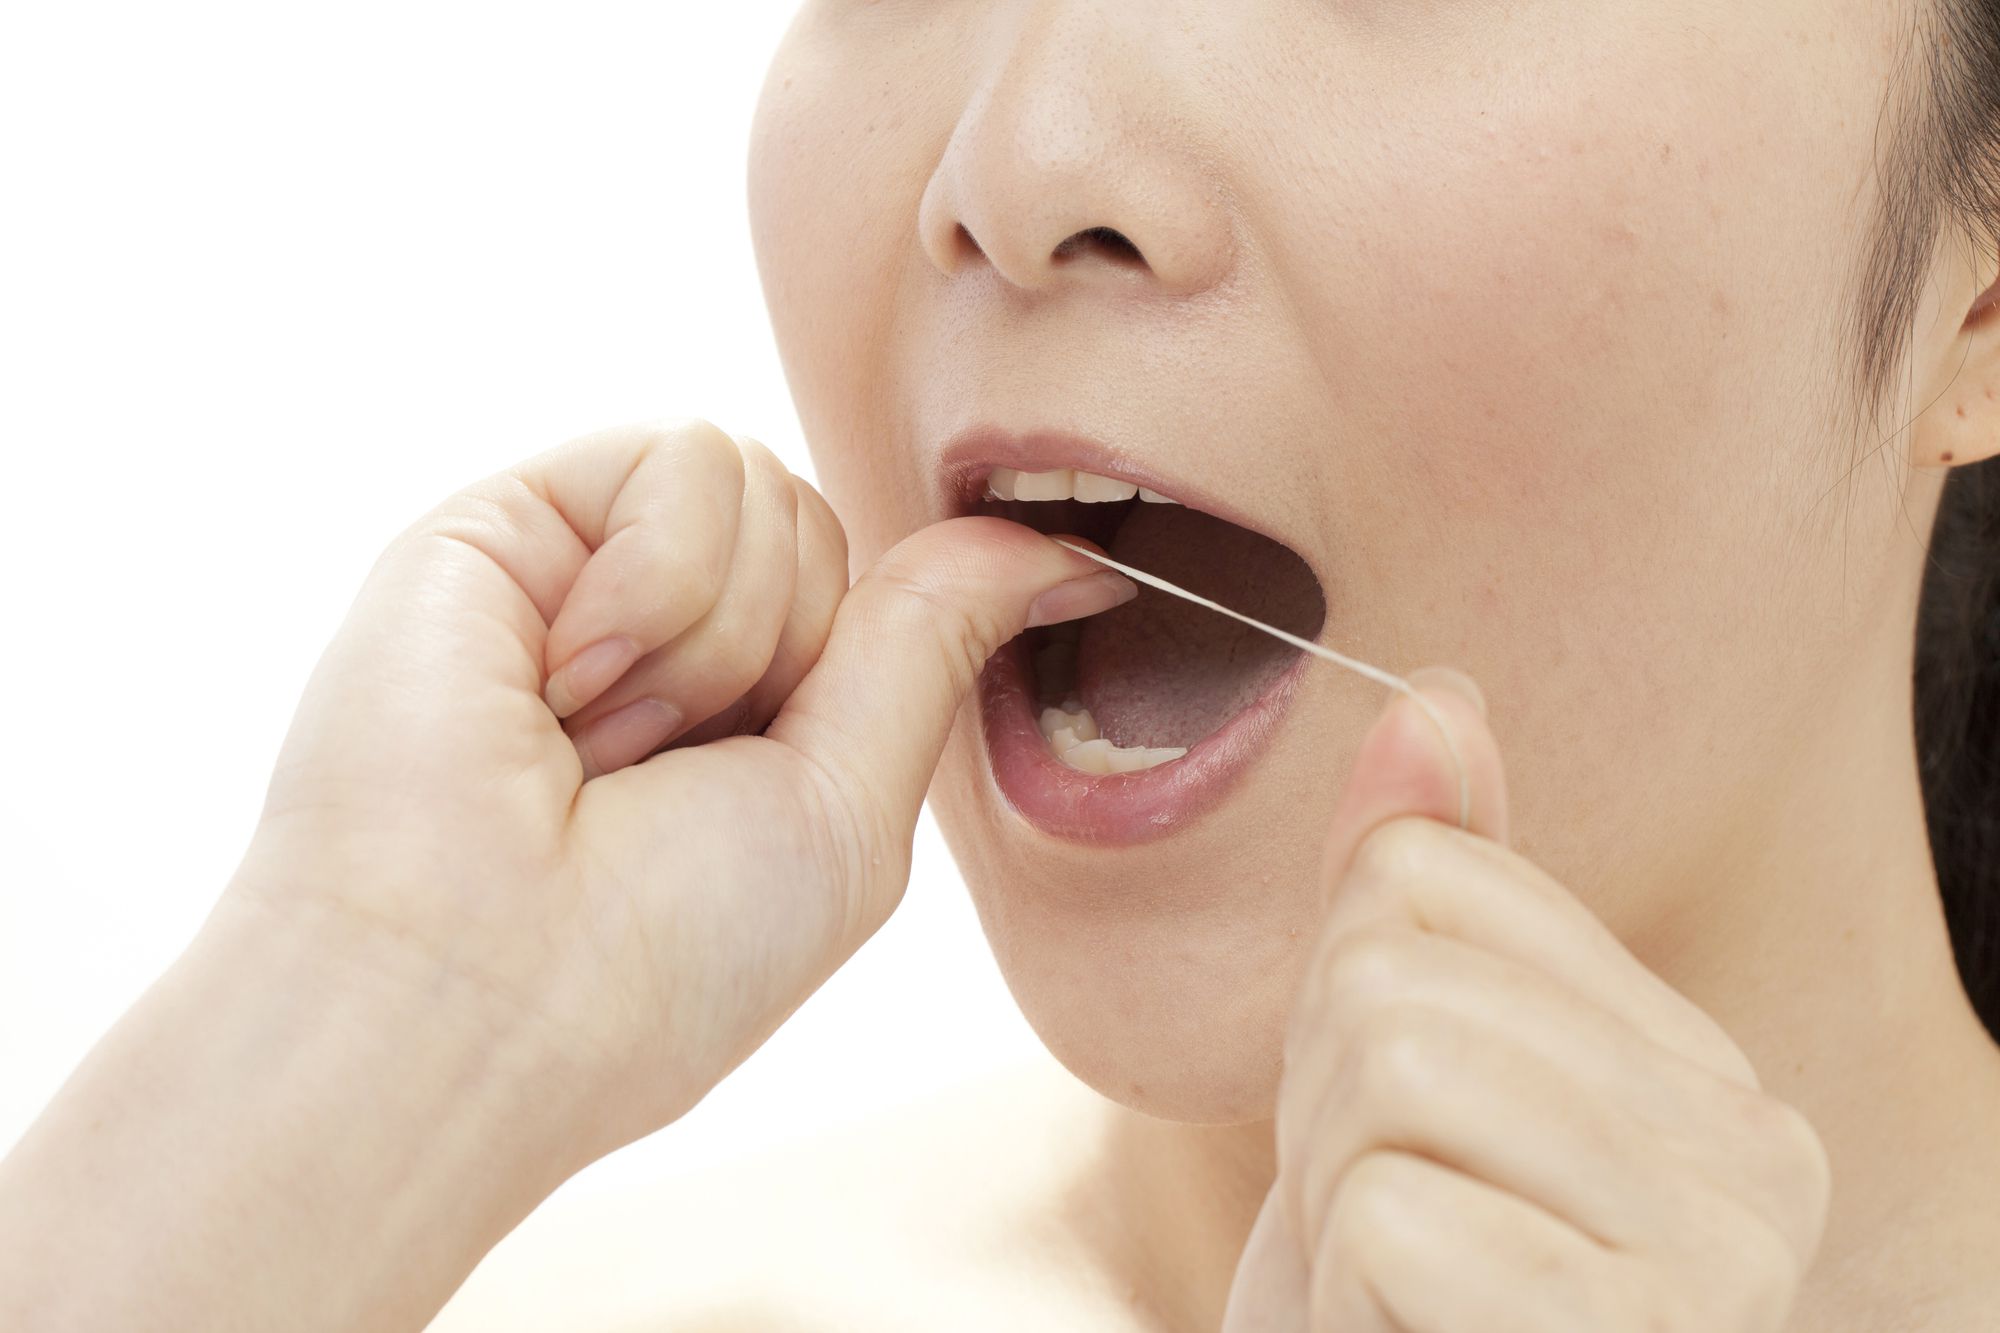 歯槽膿漏で排膿が多い方の歯磨き法